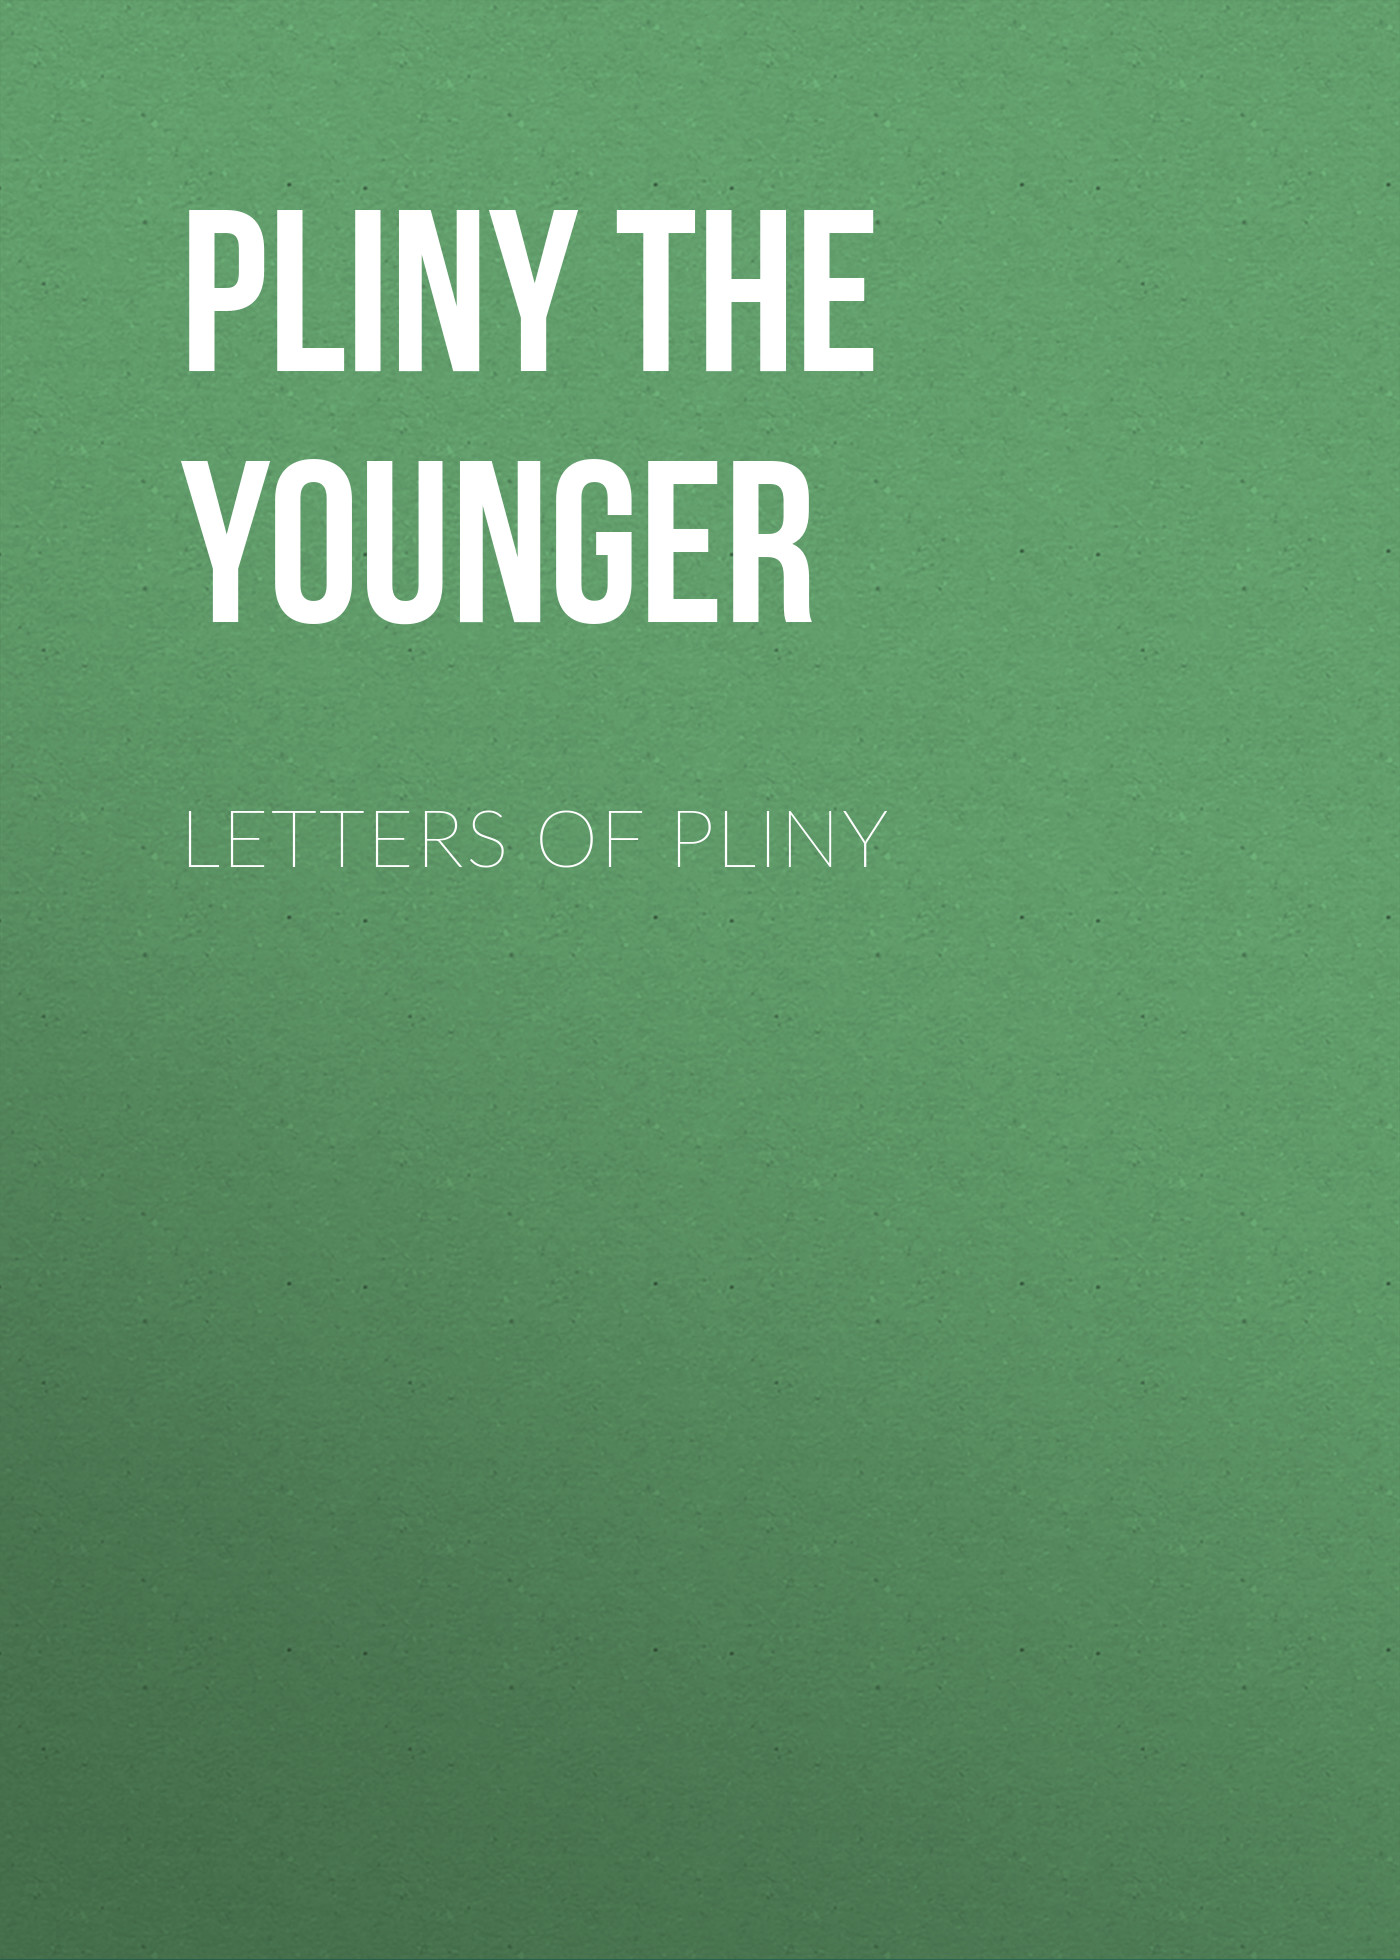 Книга Letters of Pliny из серии , созданная  Pliny the Younger, может относится к жанру Биографии и Мемуары, Зарубежная старинная литература. Стоимость электронной книги Letters of Pliny с идентификатором 34841206 составляет 0 руб.